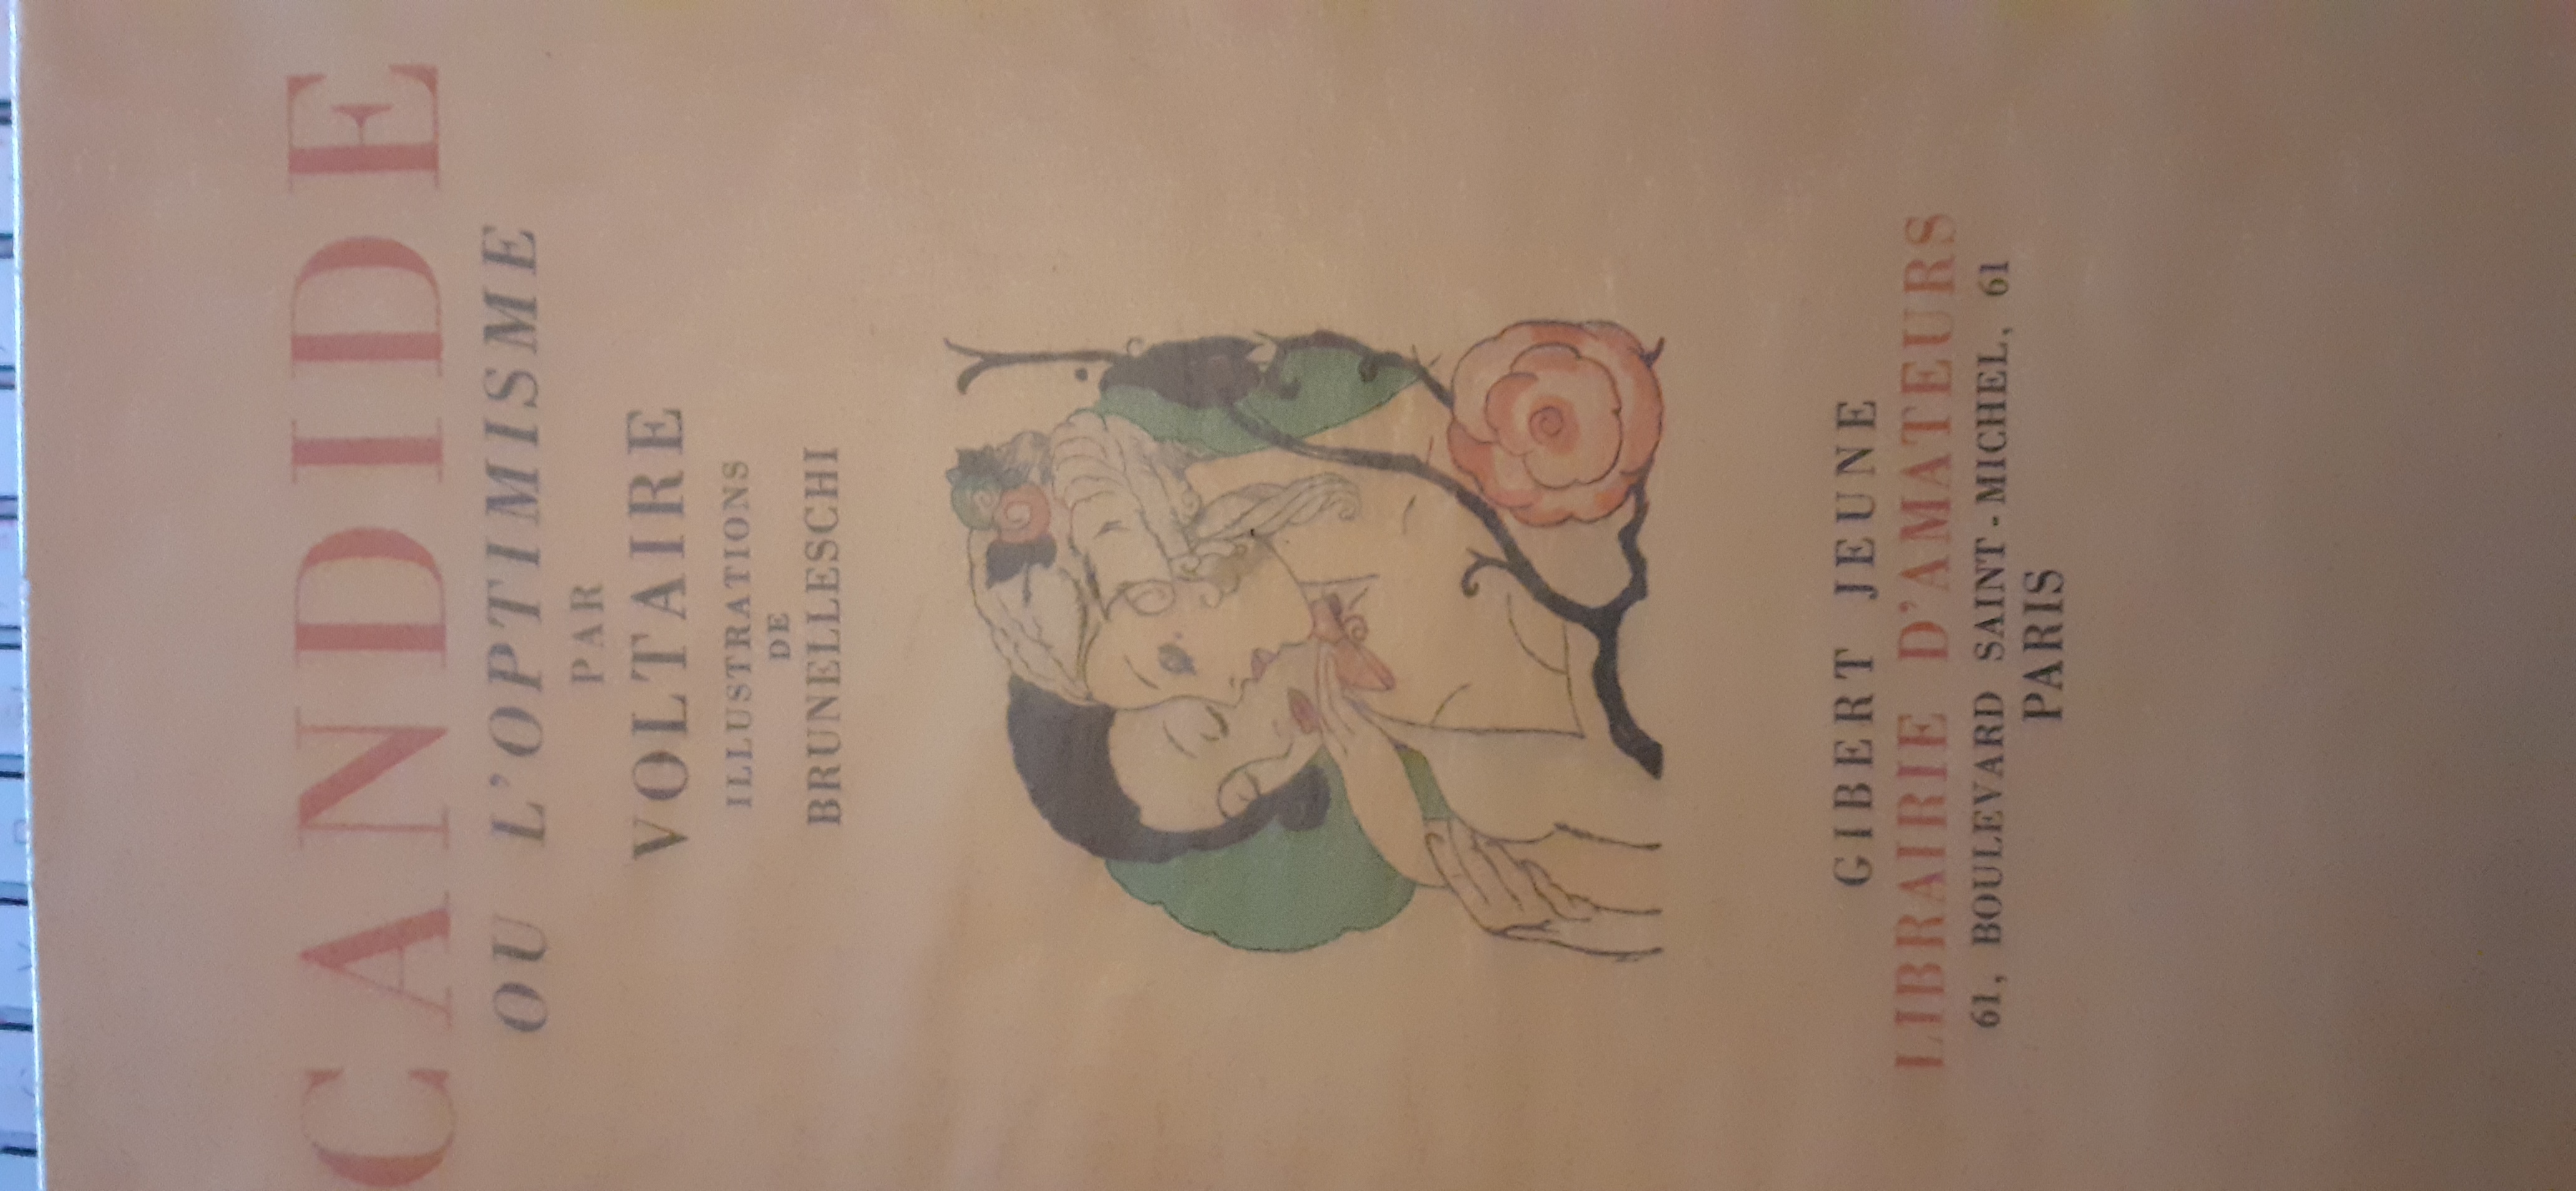 CANDIDE OU L'OPTIMISME par VOLTAIRE: bon Couverture souple (1921